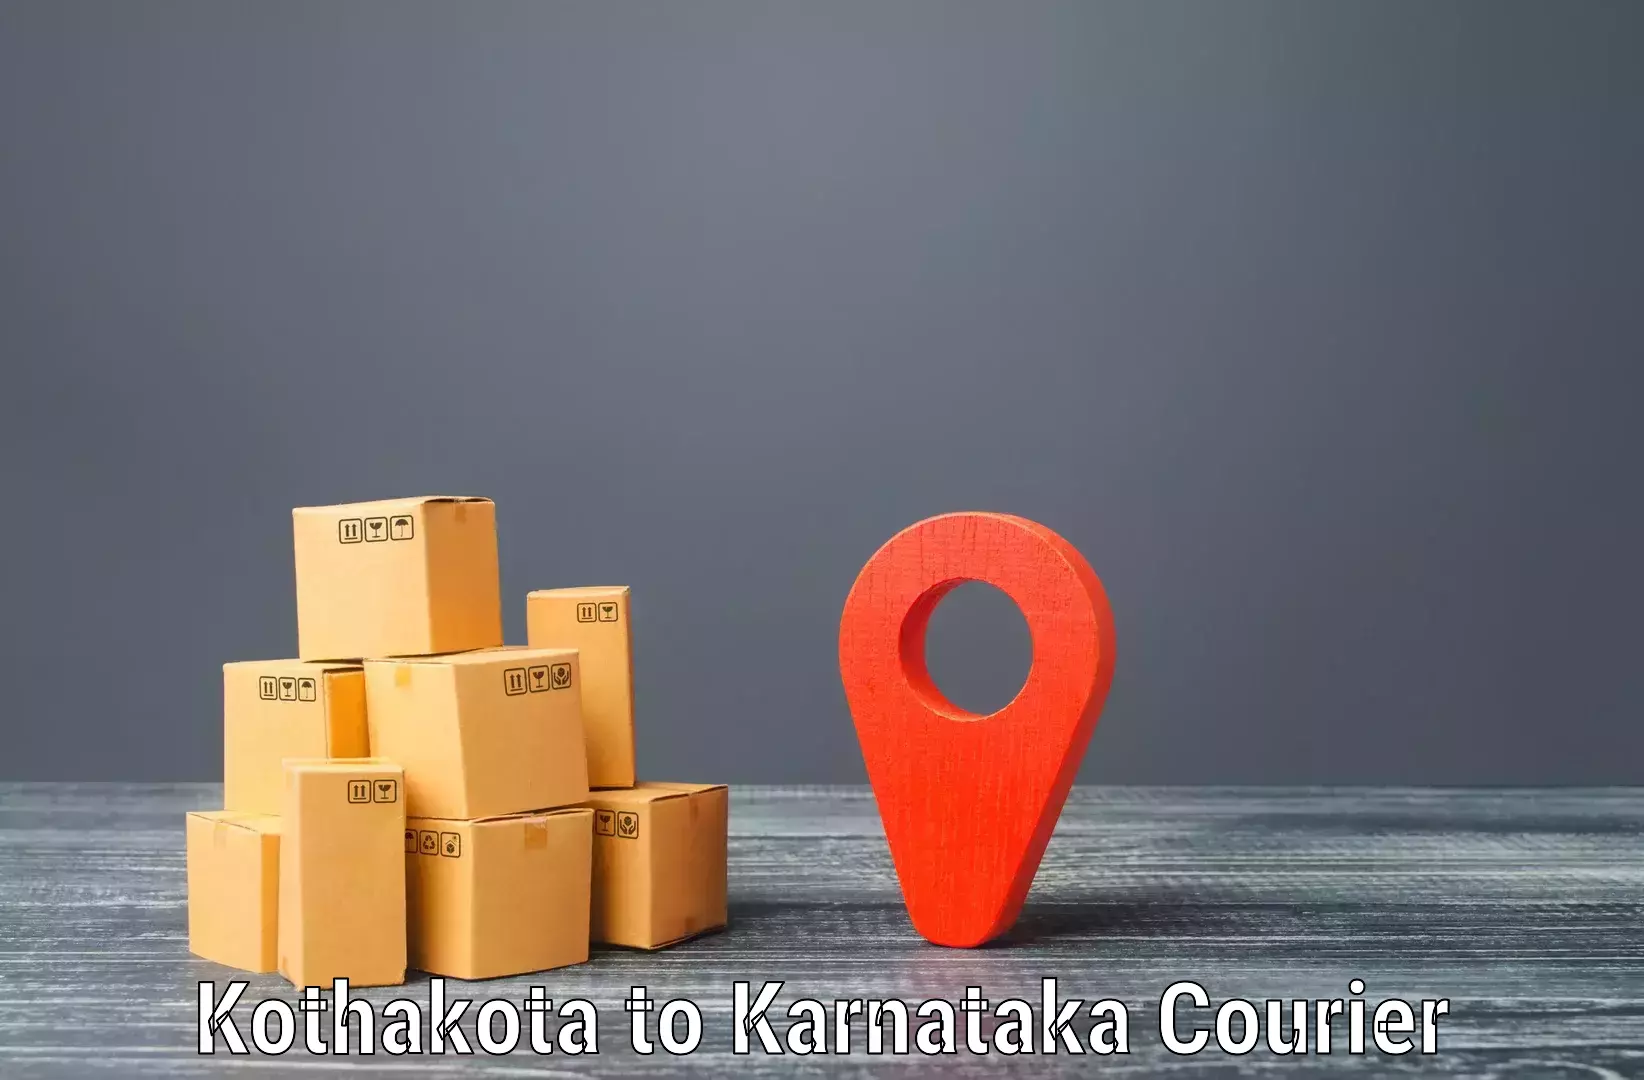 Next-day delivery options Kothakota to Tavarekere